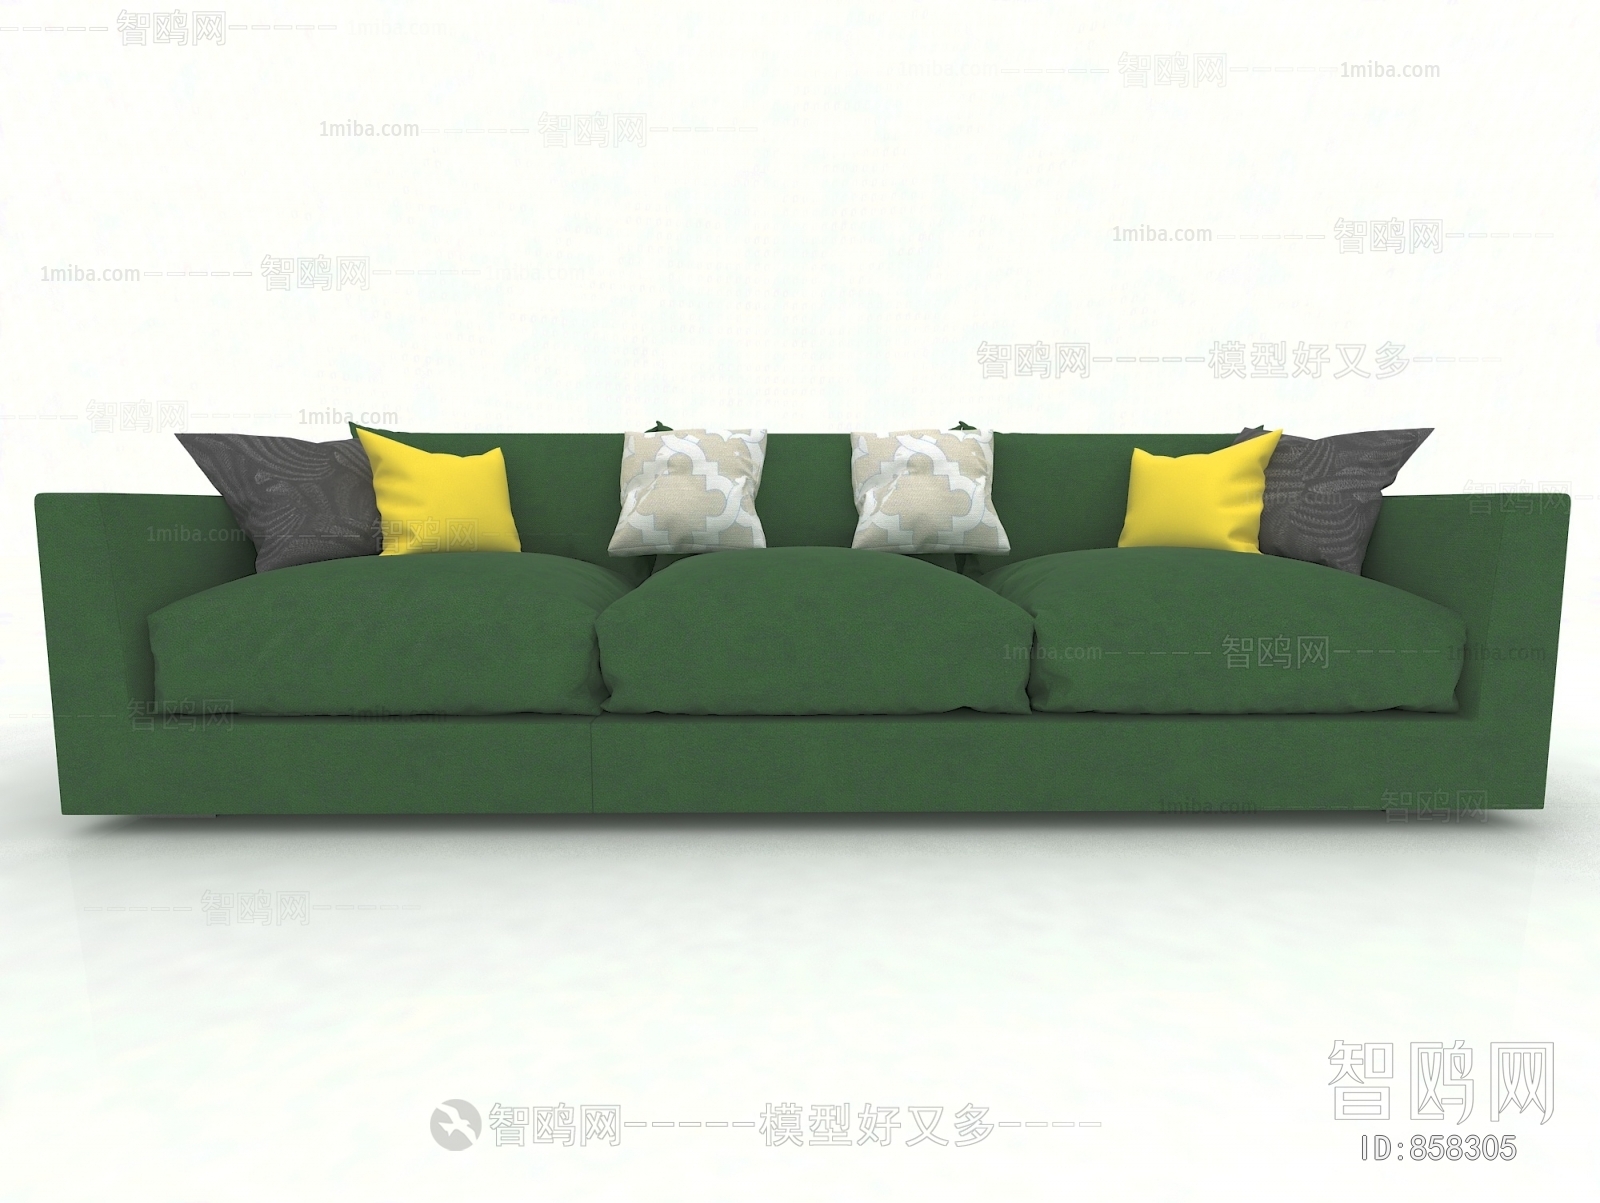 New Chinese Style Three-seat Sofa